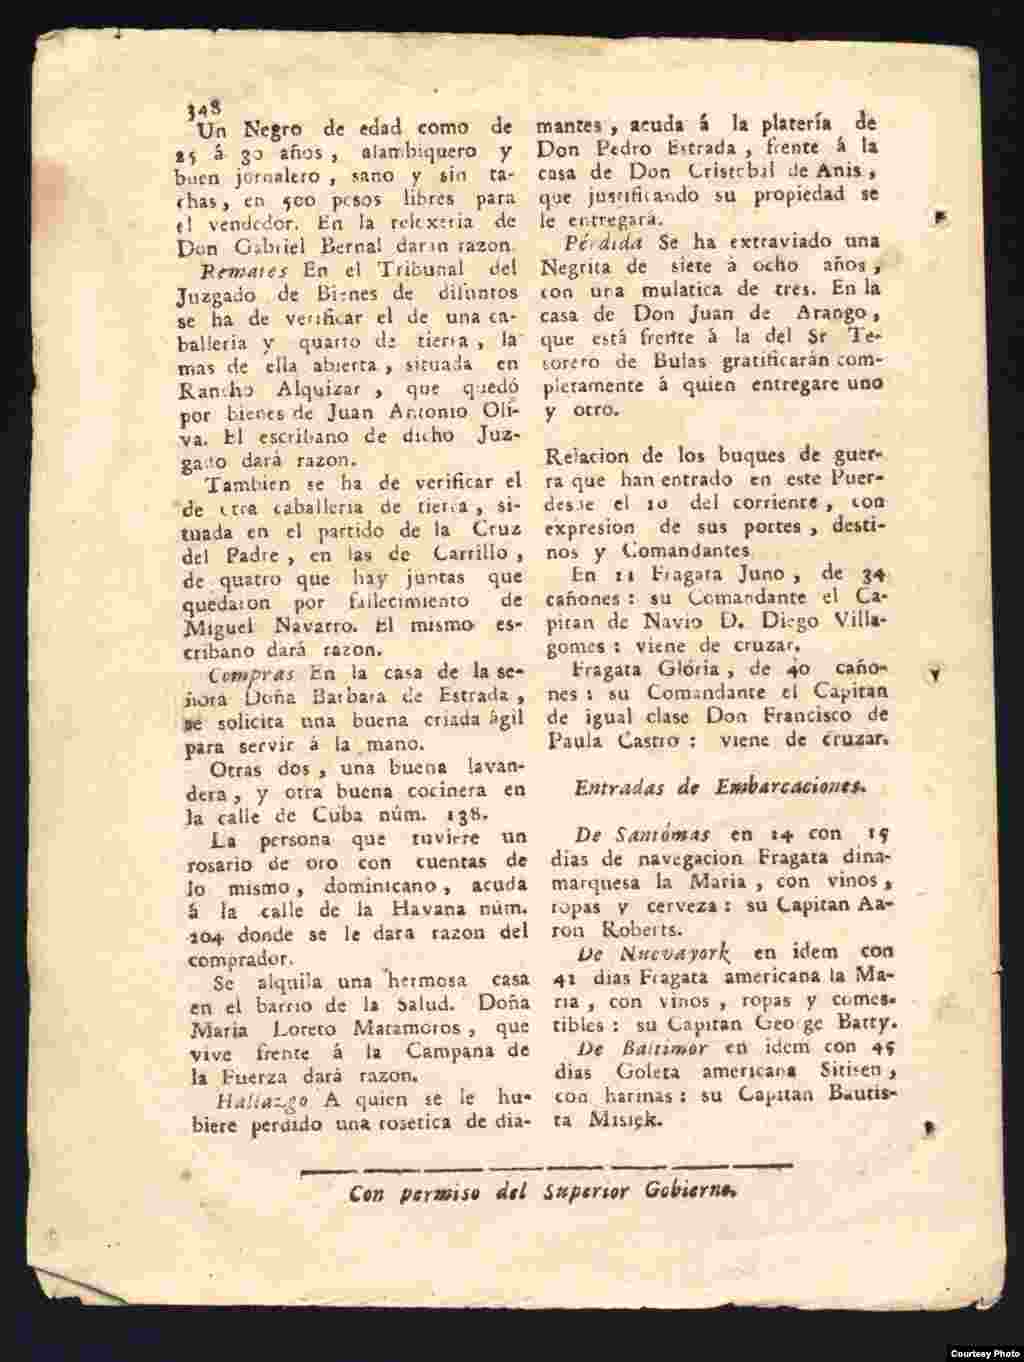 Papel Periódico de La Havana (4)